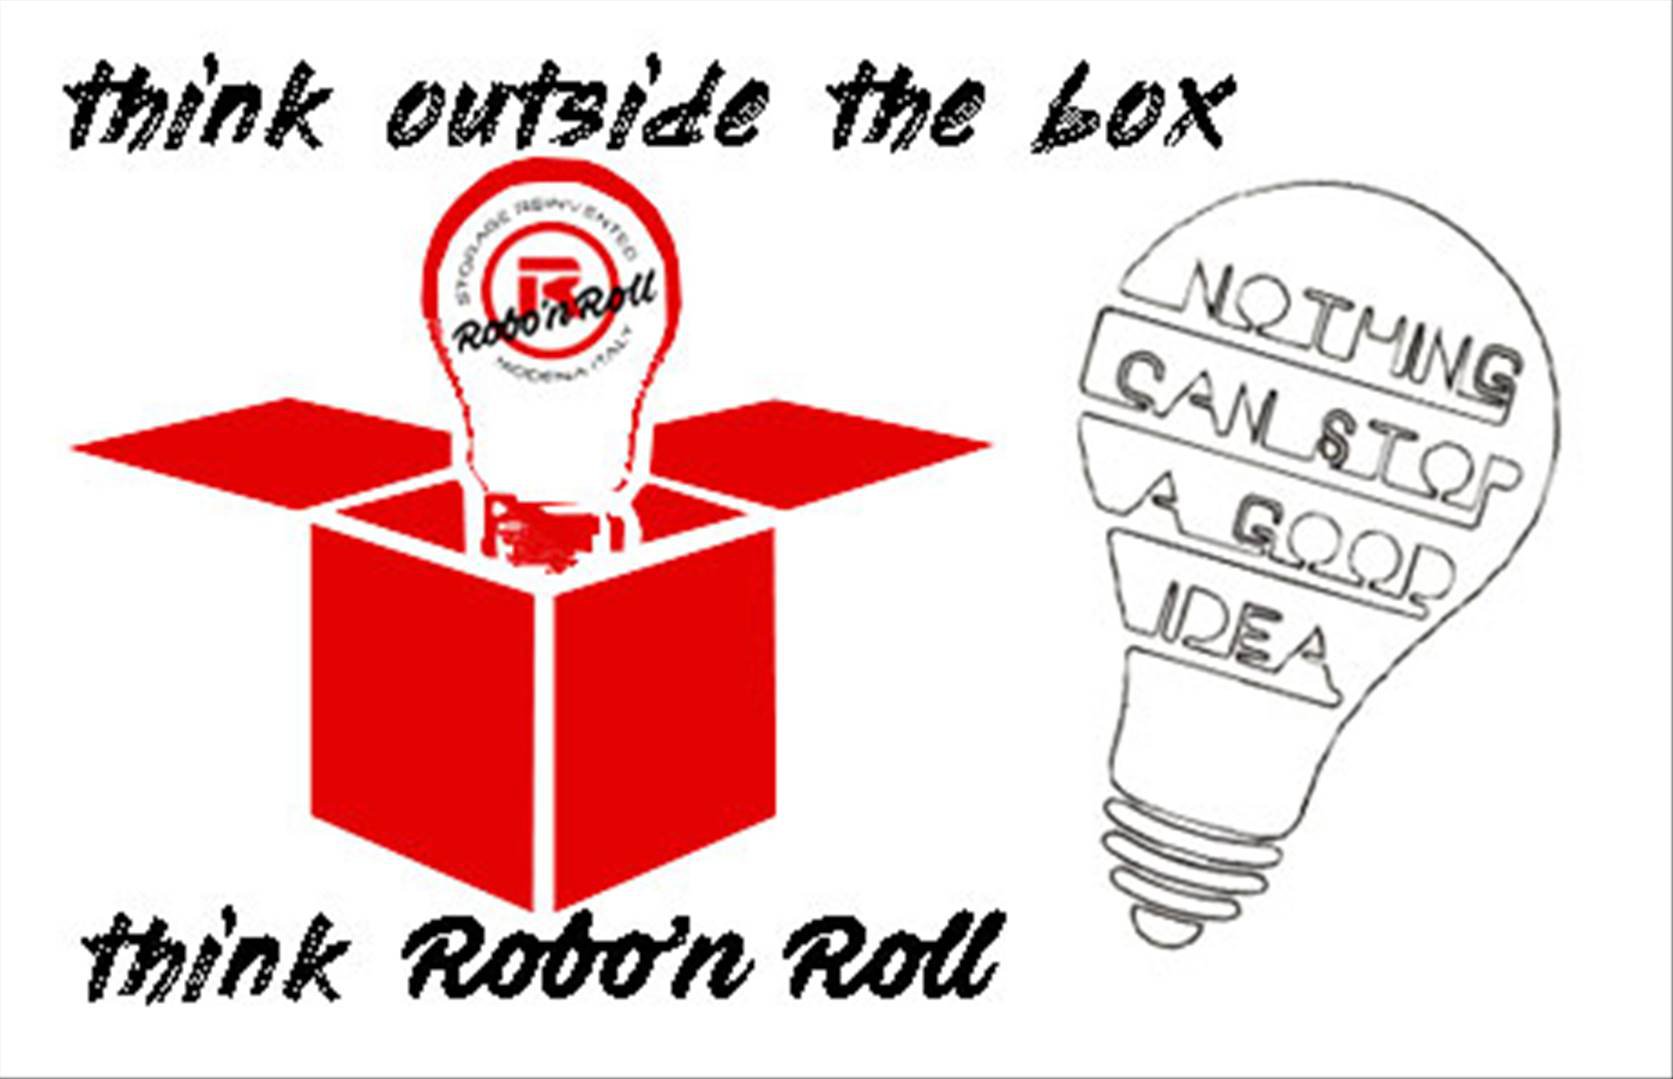 Robo'n Roll cerca persone in grado di andare oltre agli schemi costituiti.